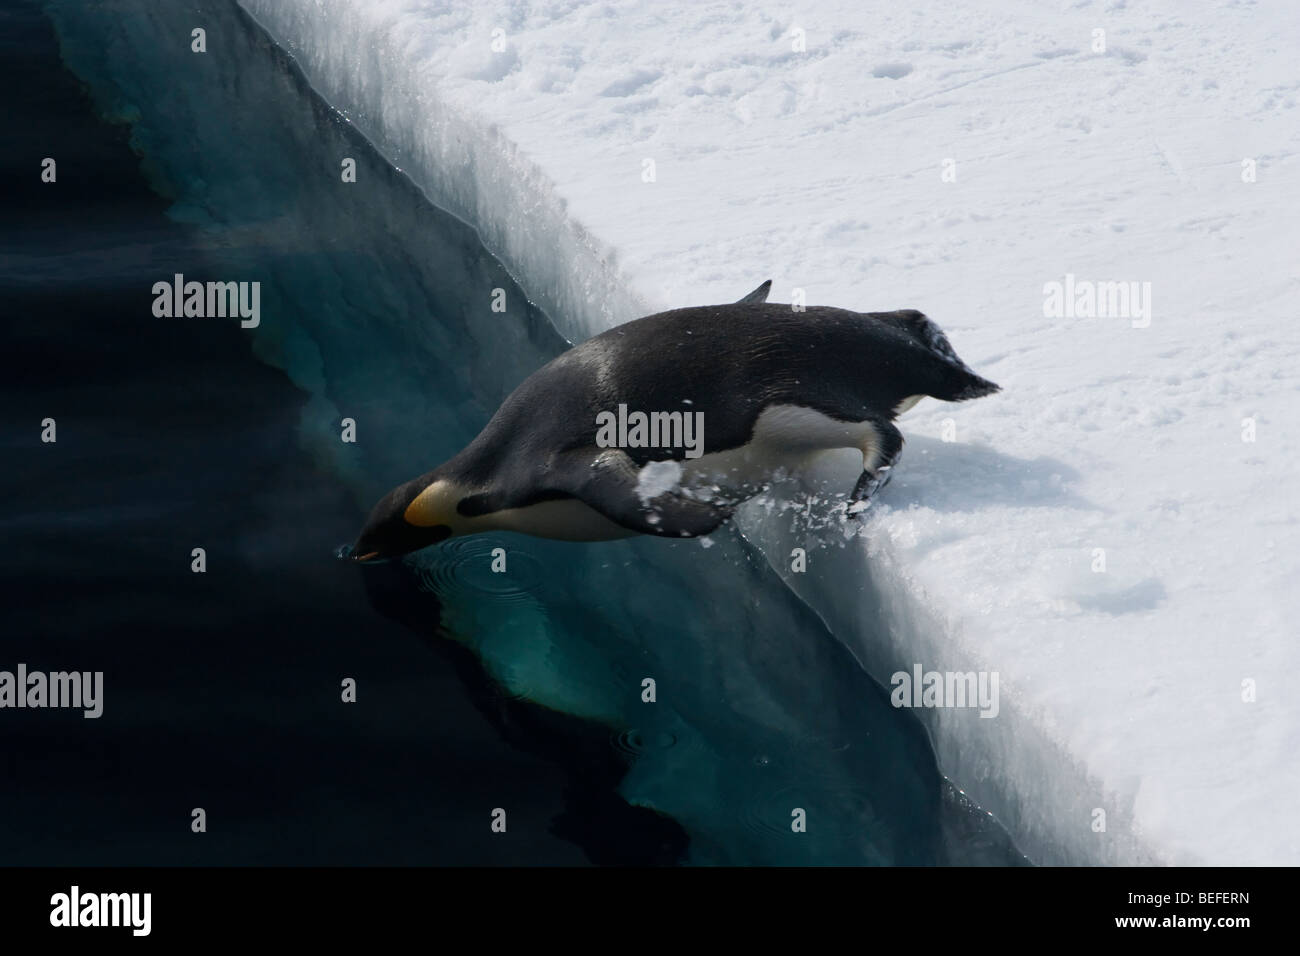 Arrêter-manchot empereur d'action de la plate-forme de glace d'une épaisseur de plongée dans l'océan Antarctique bec entrant dans l'eau pieds dans l'eau vue sur la glace de l'ice shelf ci-dessous Banque D'Images